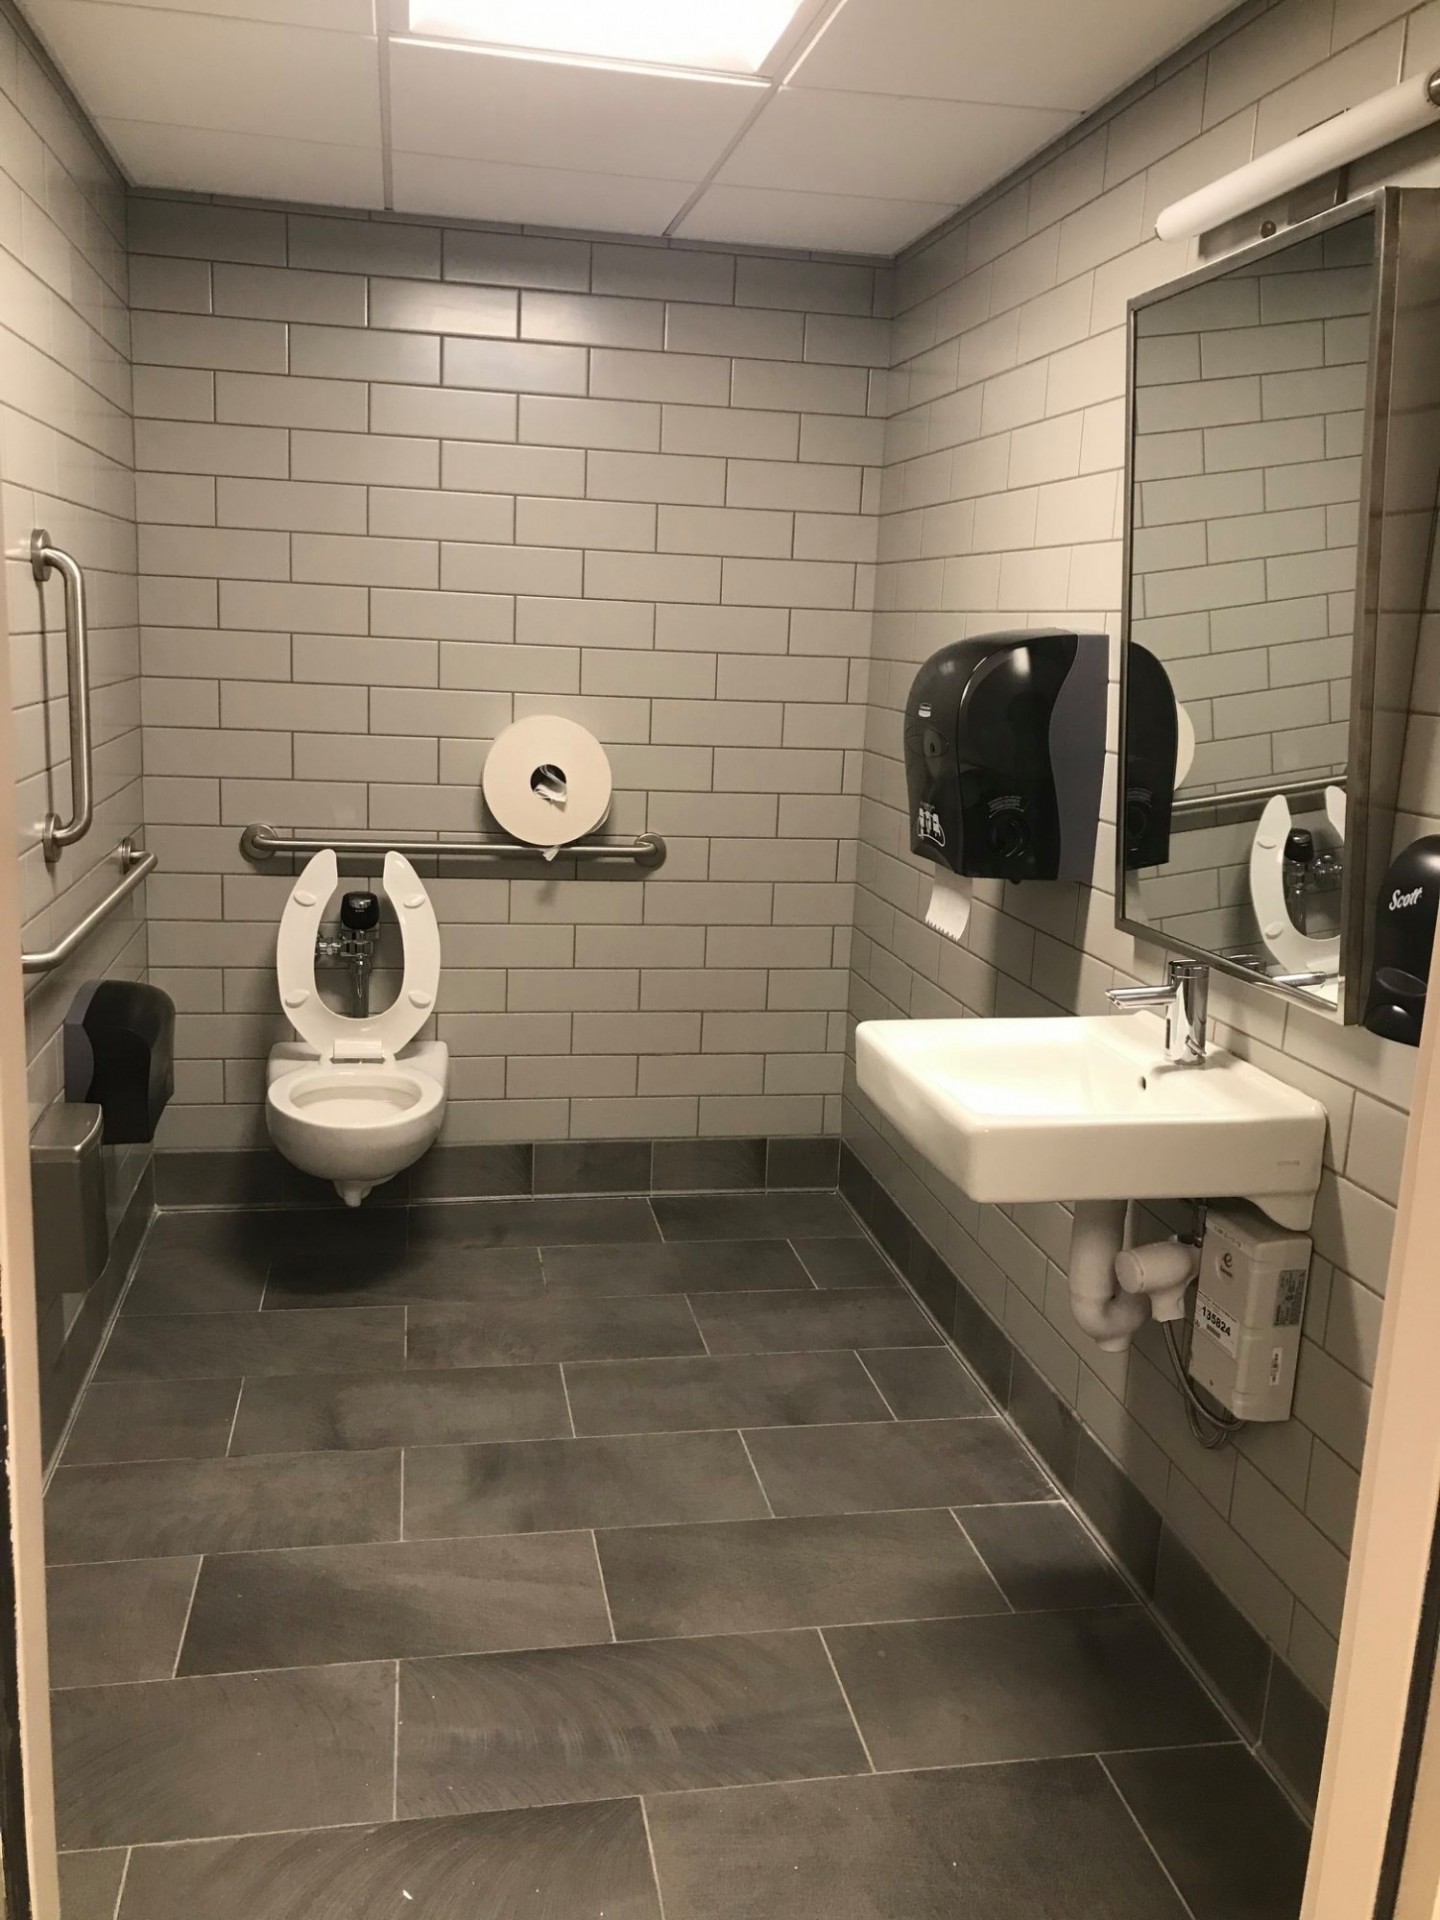 Gender-neutral accessible restroom